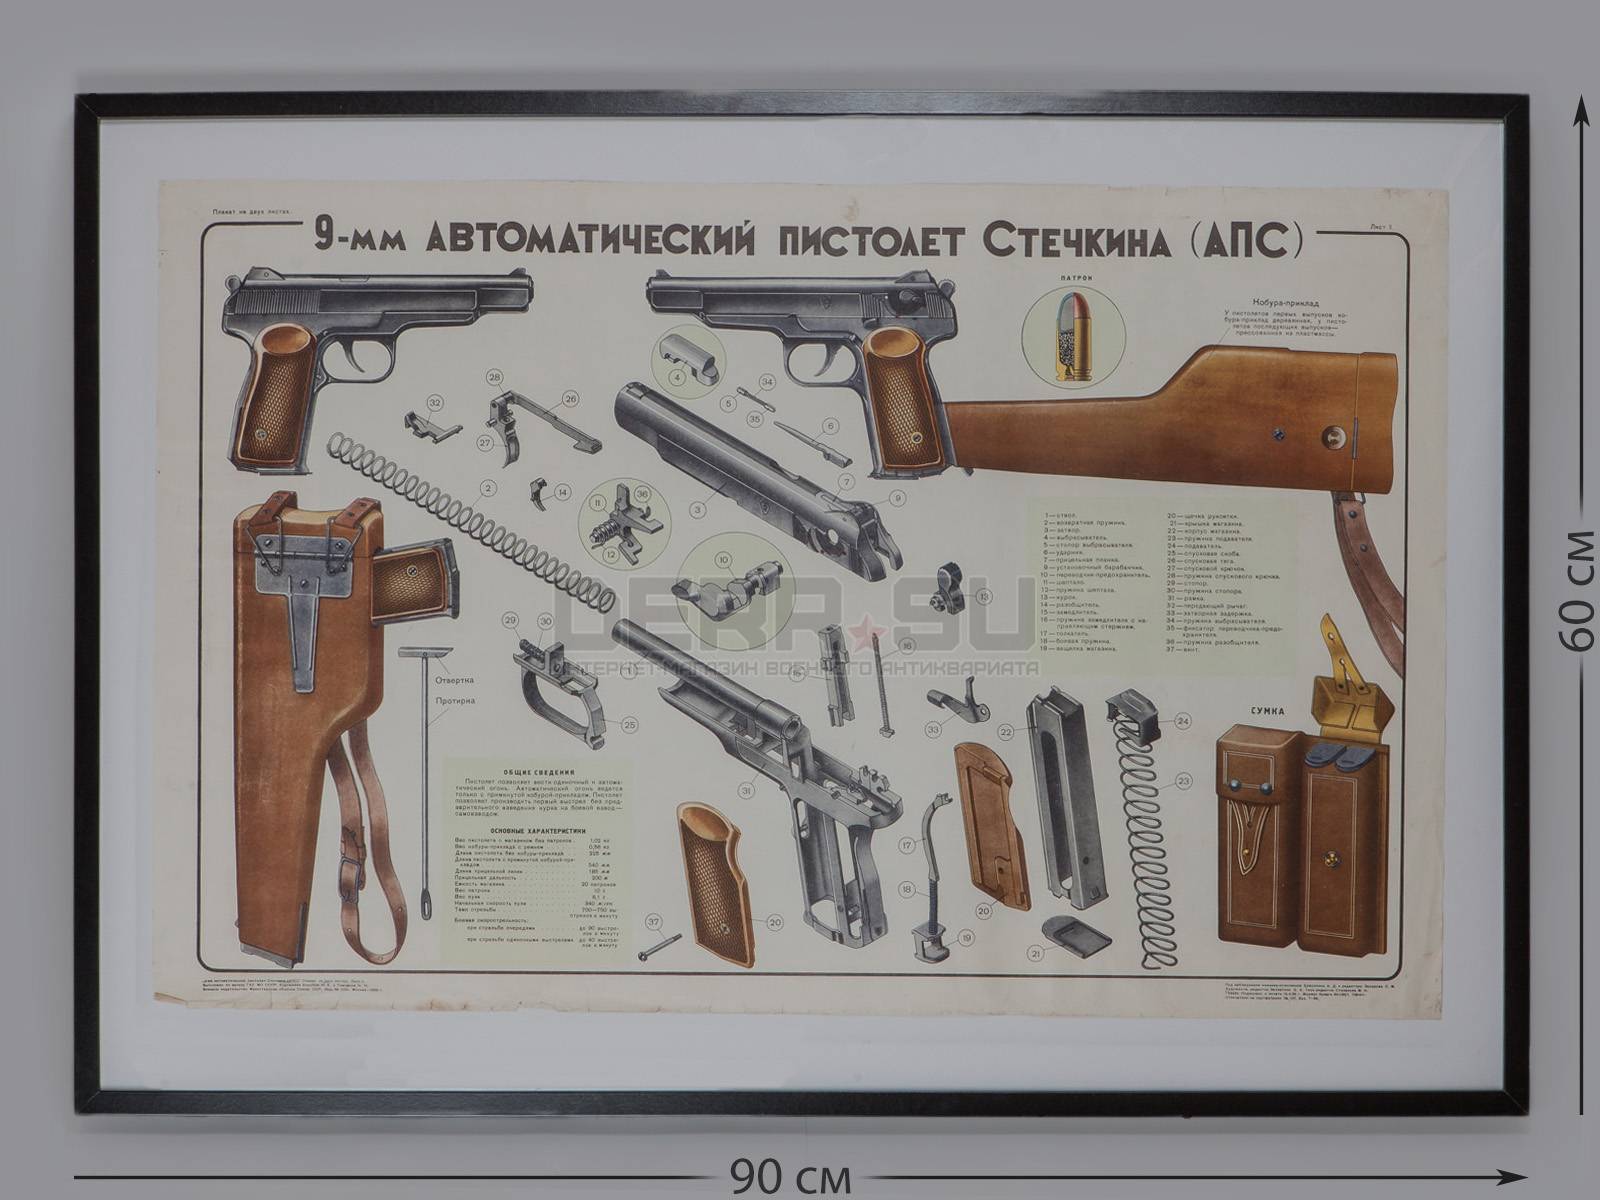 Автоматический пистолет и боевой портсигар: как стечкин изменил представление о стрелковом оружии — рт на русском